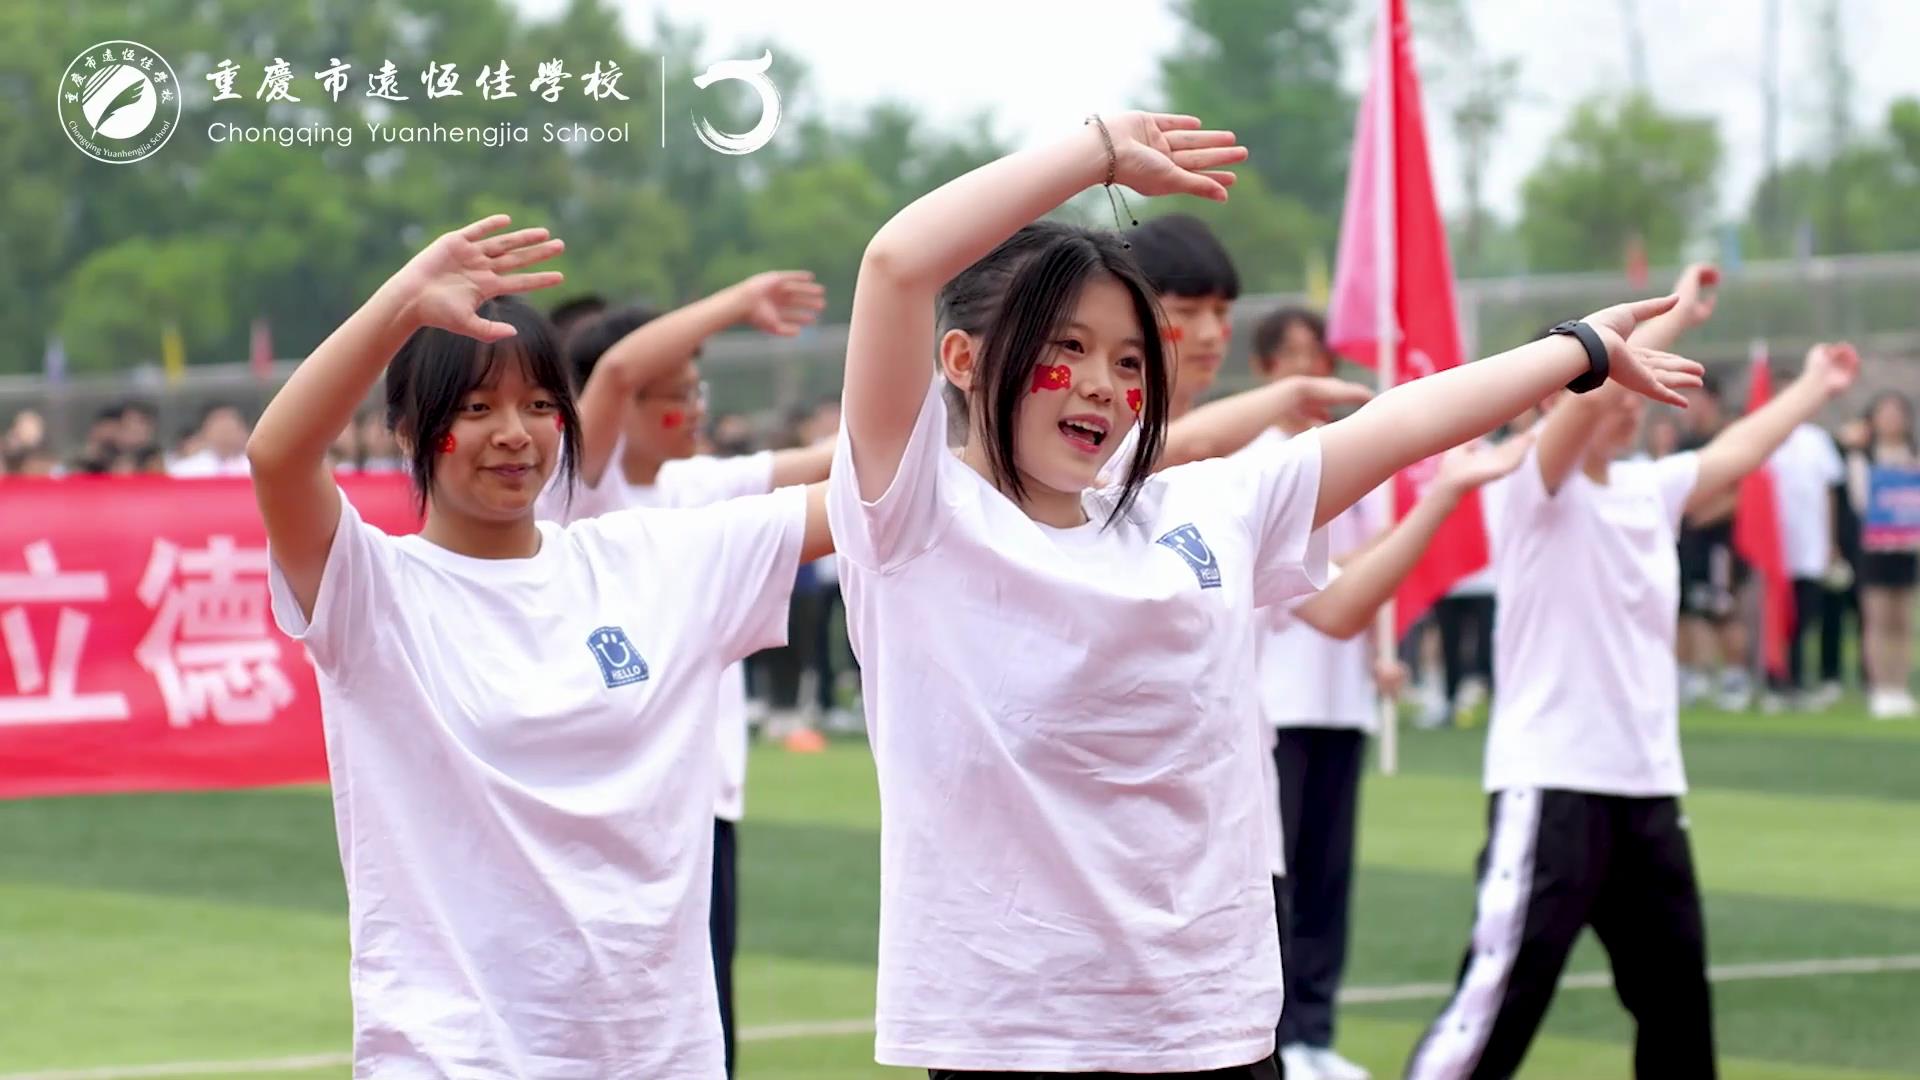 美好学校| 礼赞二十大 健康新征程——重庆市远恒佳学校第五届运动会开幕式